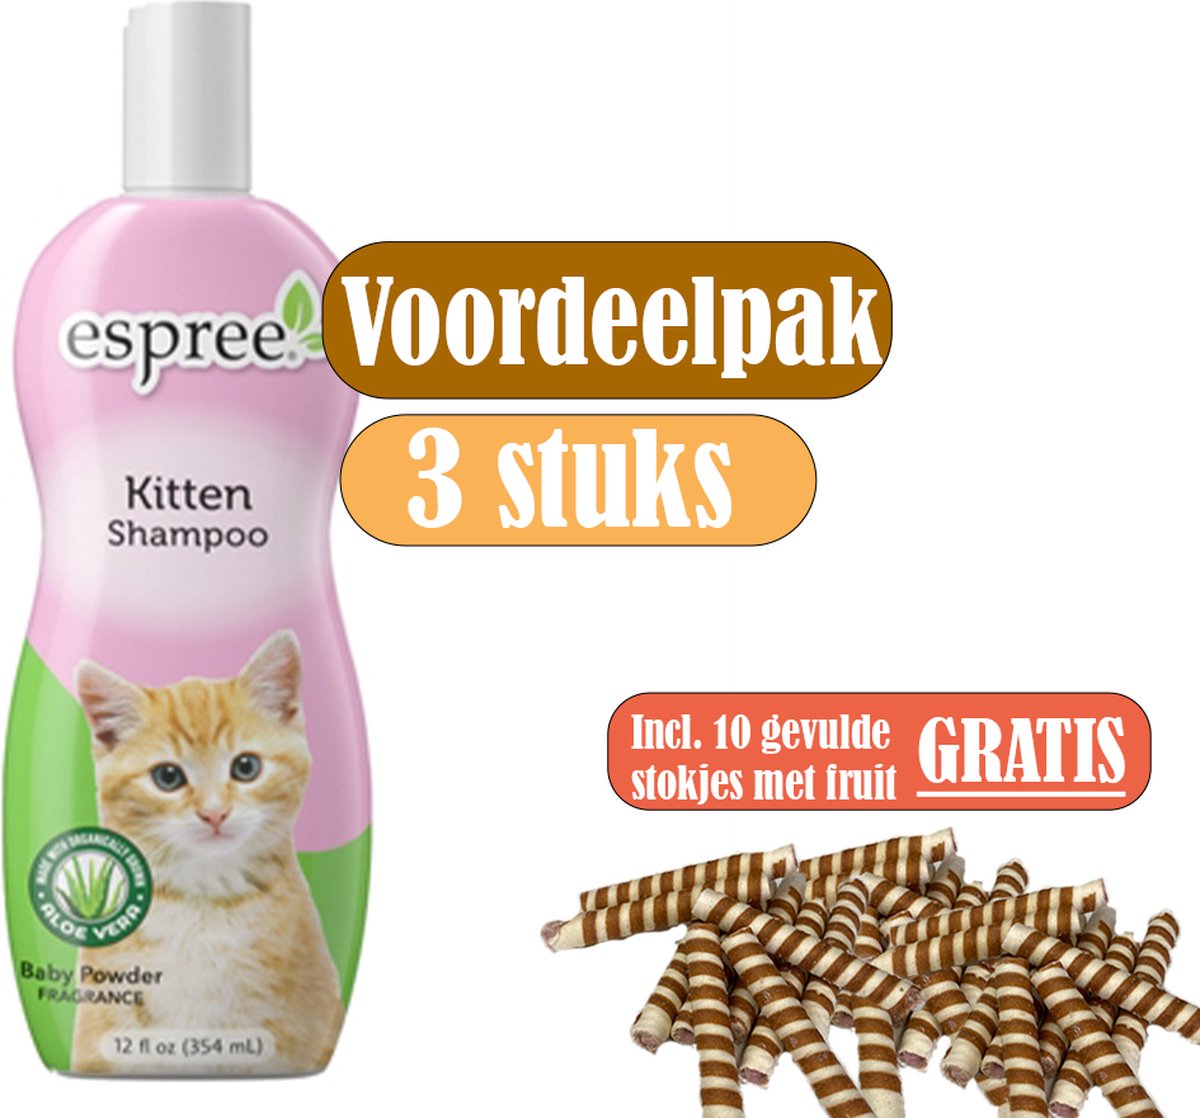 Espree Kitten Shampoo - Voordeelpak 3 stuks - inclusief gratis stokjes gevuld met fruit (10 stuks)